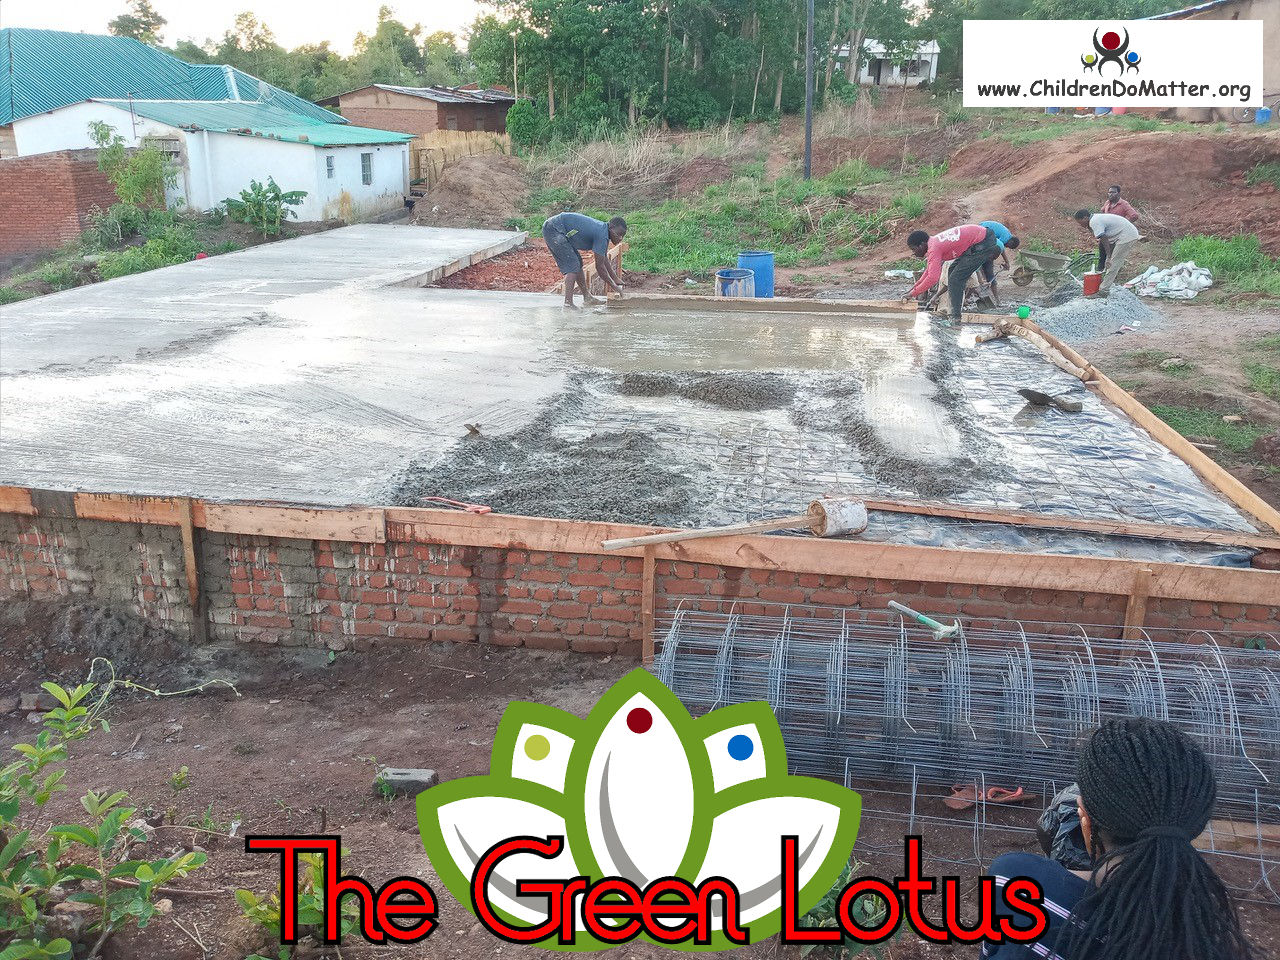 costruzione dell'orfanotrofio casa di accoglienza the green lotus a blantyre malawi - children do matter - 8